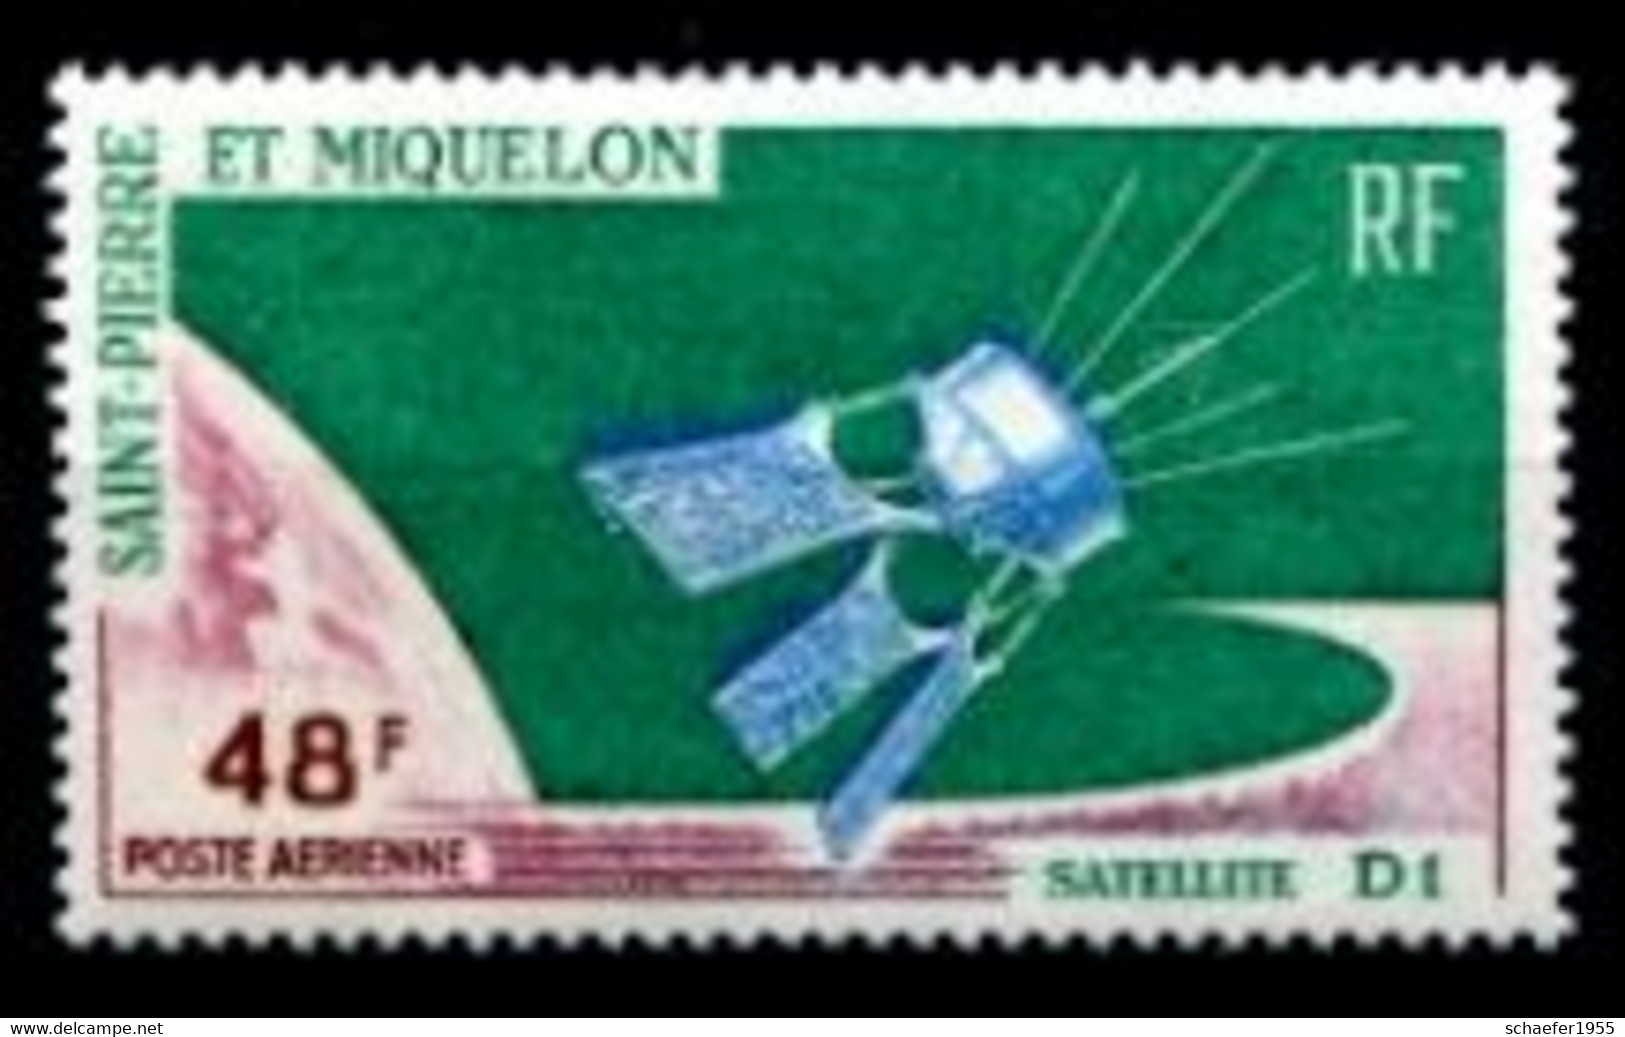 Saint Pierre Et Miquelon 1966 Satellite D1 FDC + Stamp - Amérique Du Nord